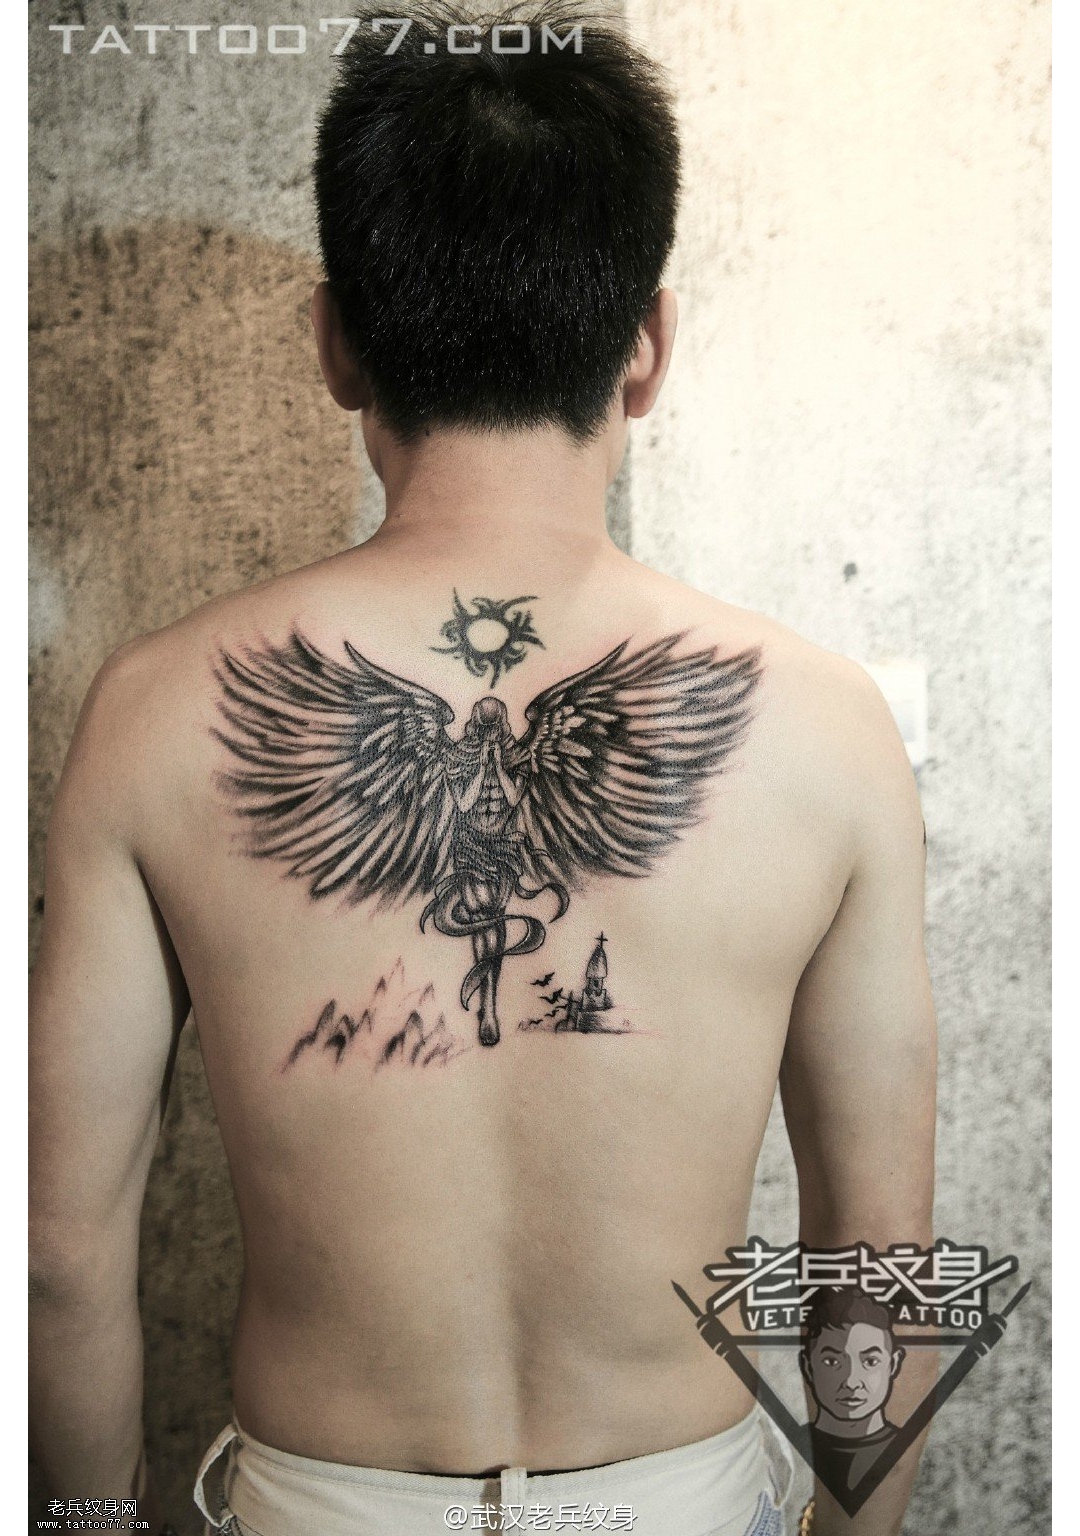 后背天使纹身图案作品